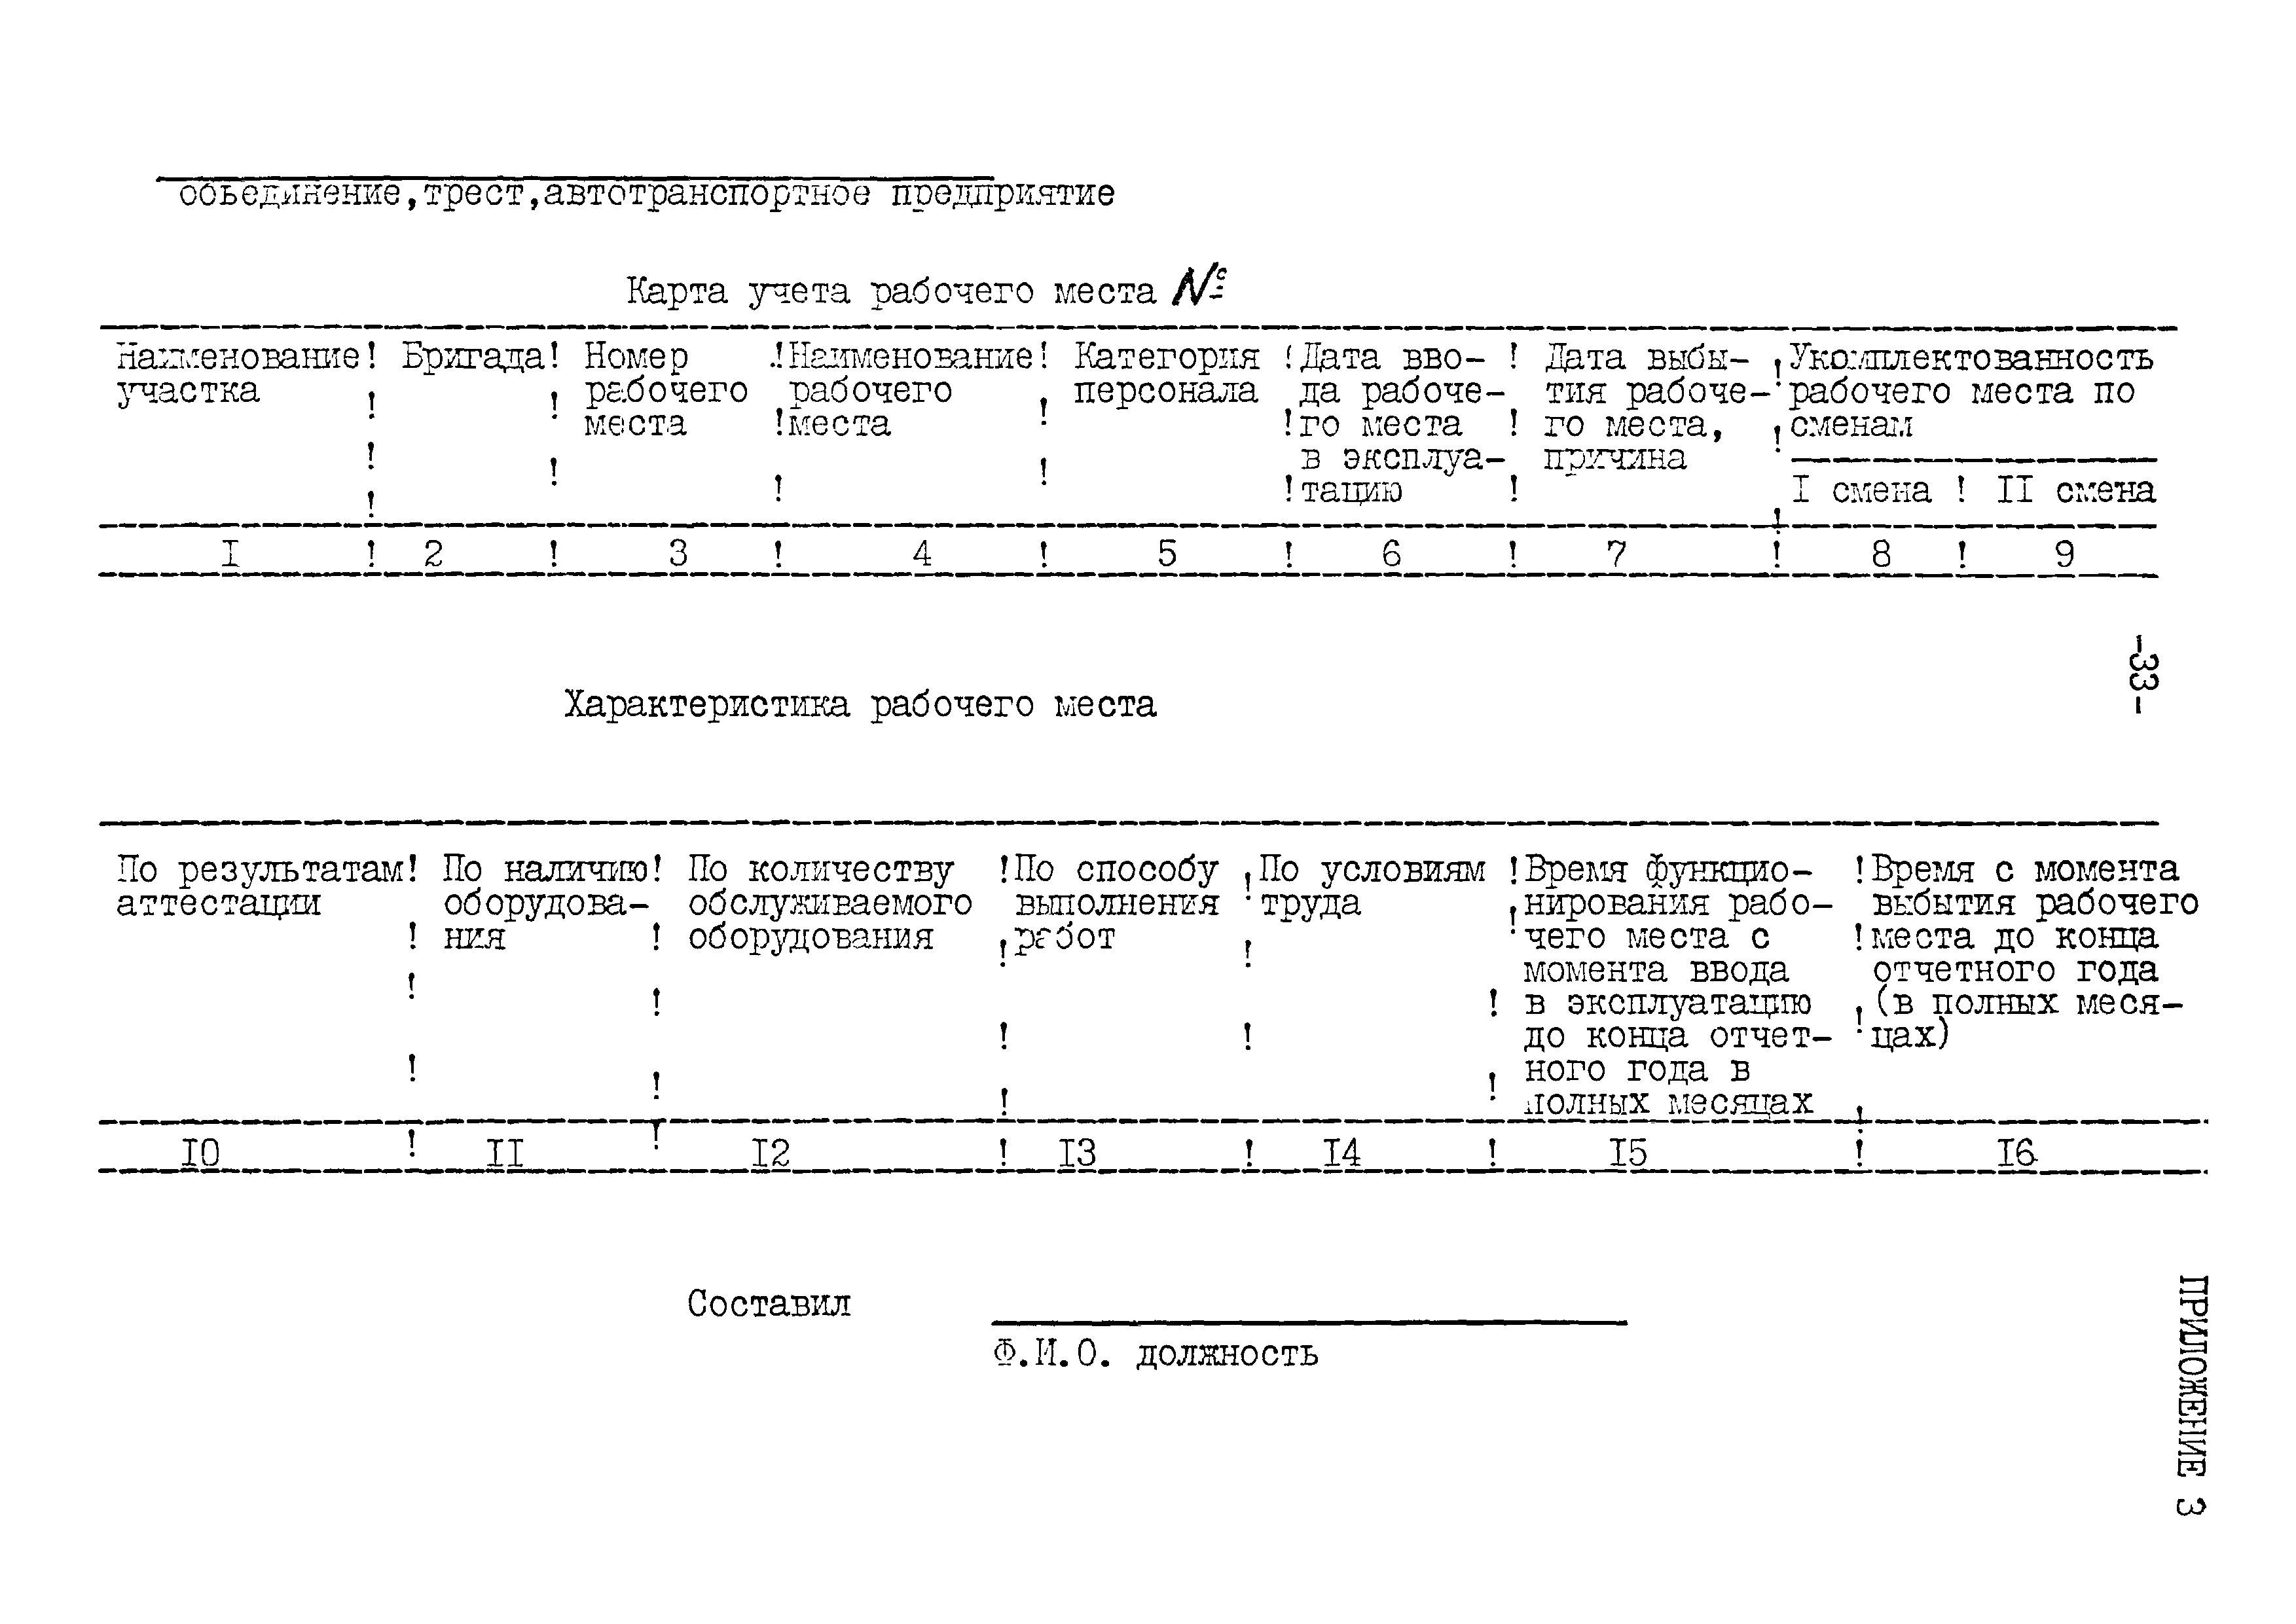 РД 102-61-87